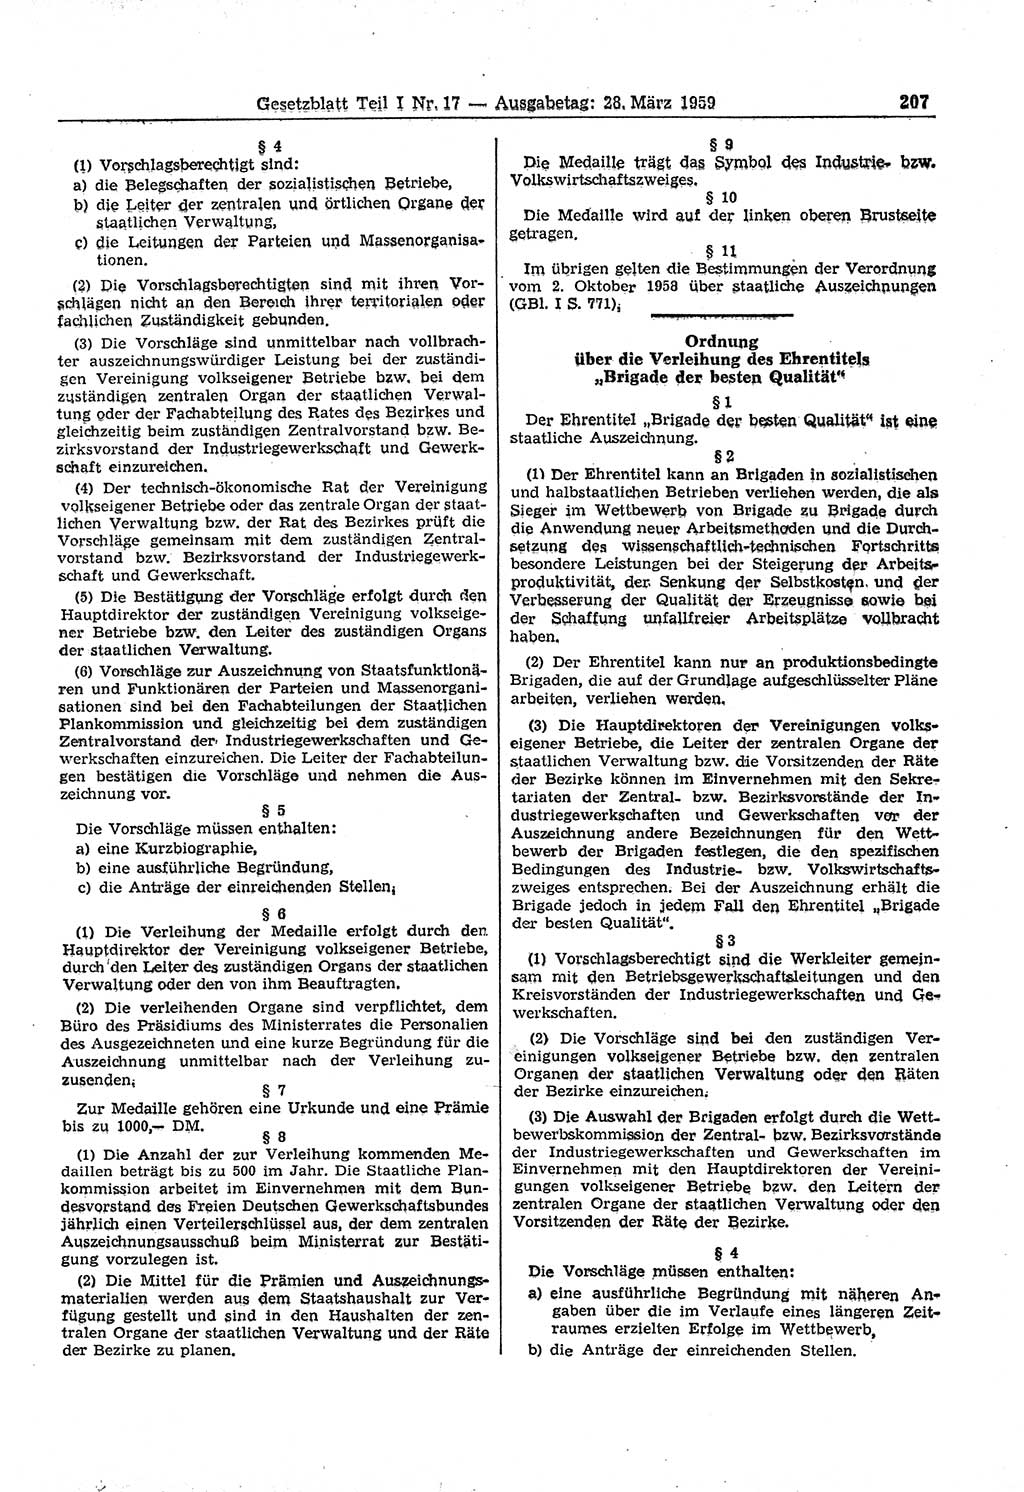 Gesetzblatt (GBl.) der Deutschen Demokratischen Republik (DDR) Teil Ⅰ 1959, Seite 207 (GBl. DDR Ⅰ 1959, S. 207)